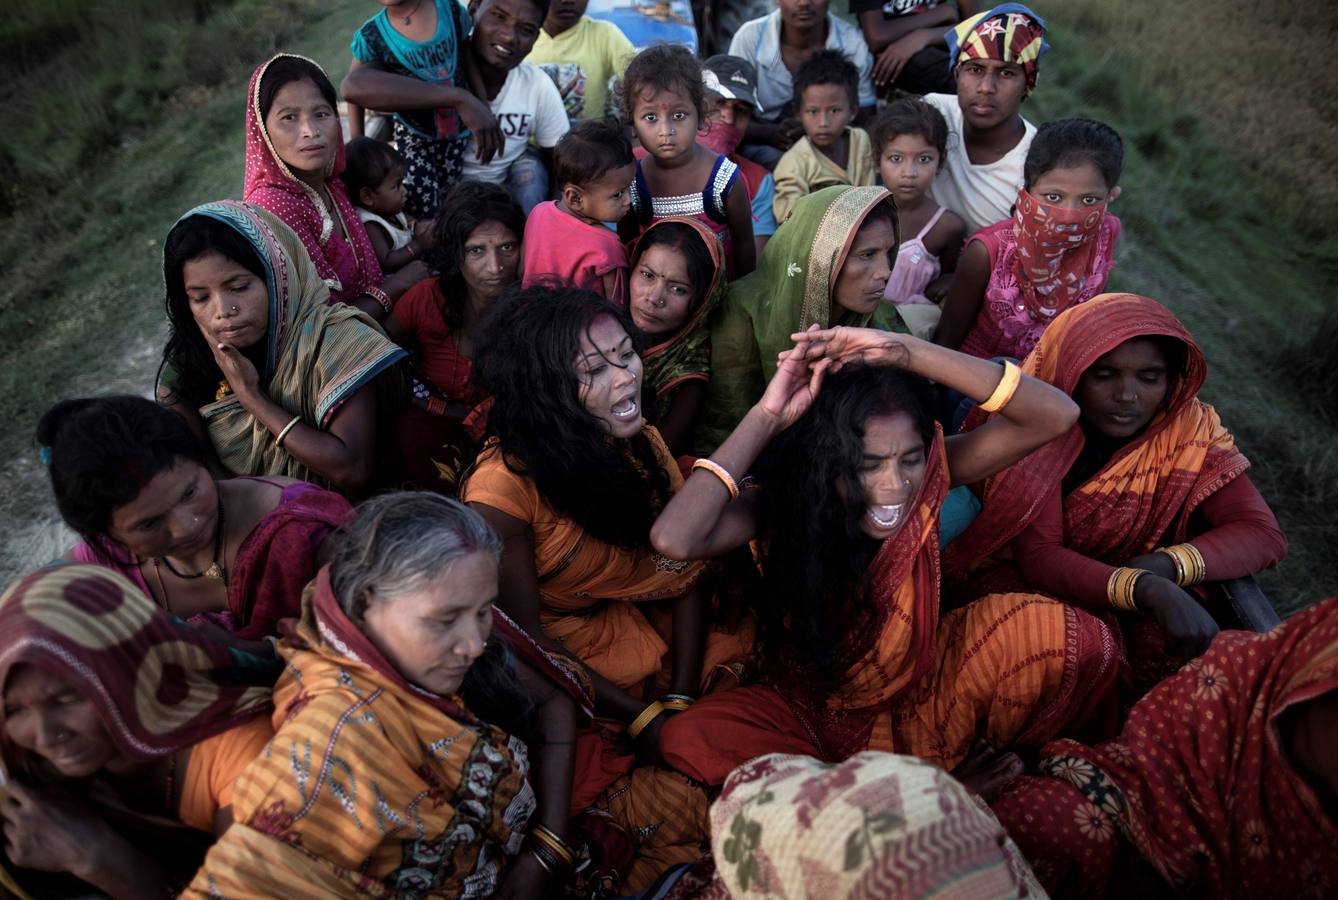 Un grupo de mujeres que creen haber sido poseídas por espíritus malignos danzan y cantan mantras en la víspera de una noche de luna llena, mientras se congregan para la celebración del "Festival de los fantasmas", en las orillas del río Kamala en el distrito de Danusha (Nepal), el 3 de noviembre de 2017. La celebración tiene siglos de tradición y tiene lugar anualmente en la noche de luna llena de noviembre. Miles de personas se congregan para llevar a cabo rituales de sanación conducidos por chamanes, en los que se "cura" a personas poseídas de espíritus malignos que acechan el porvenir de las familias.